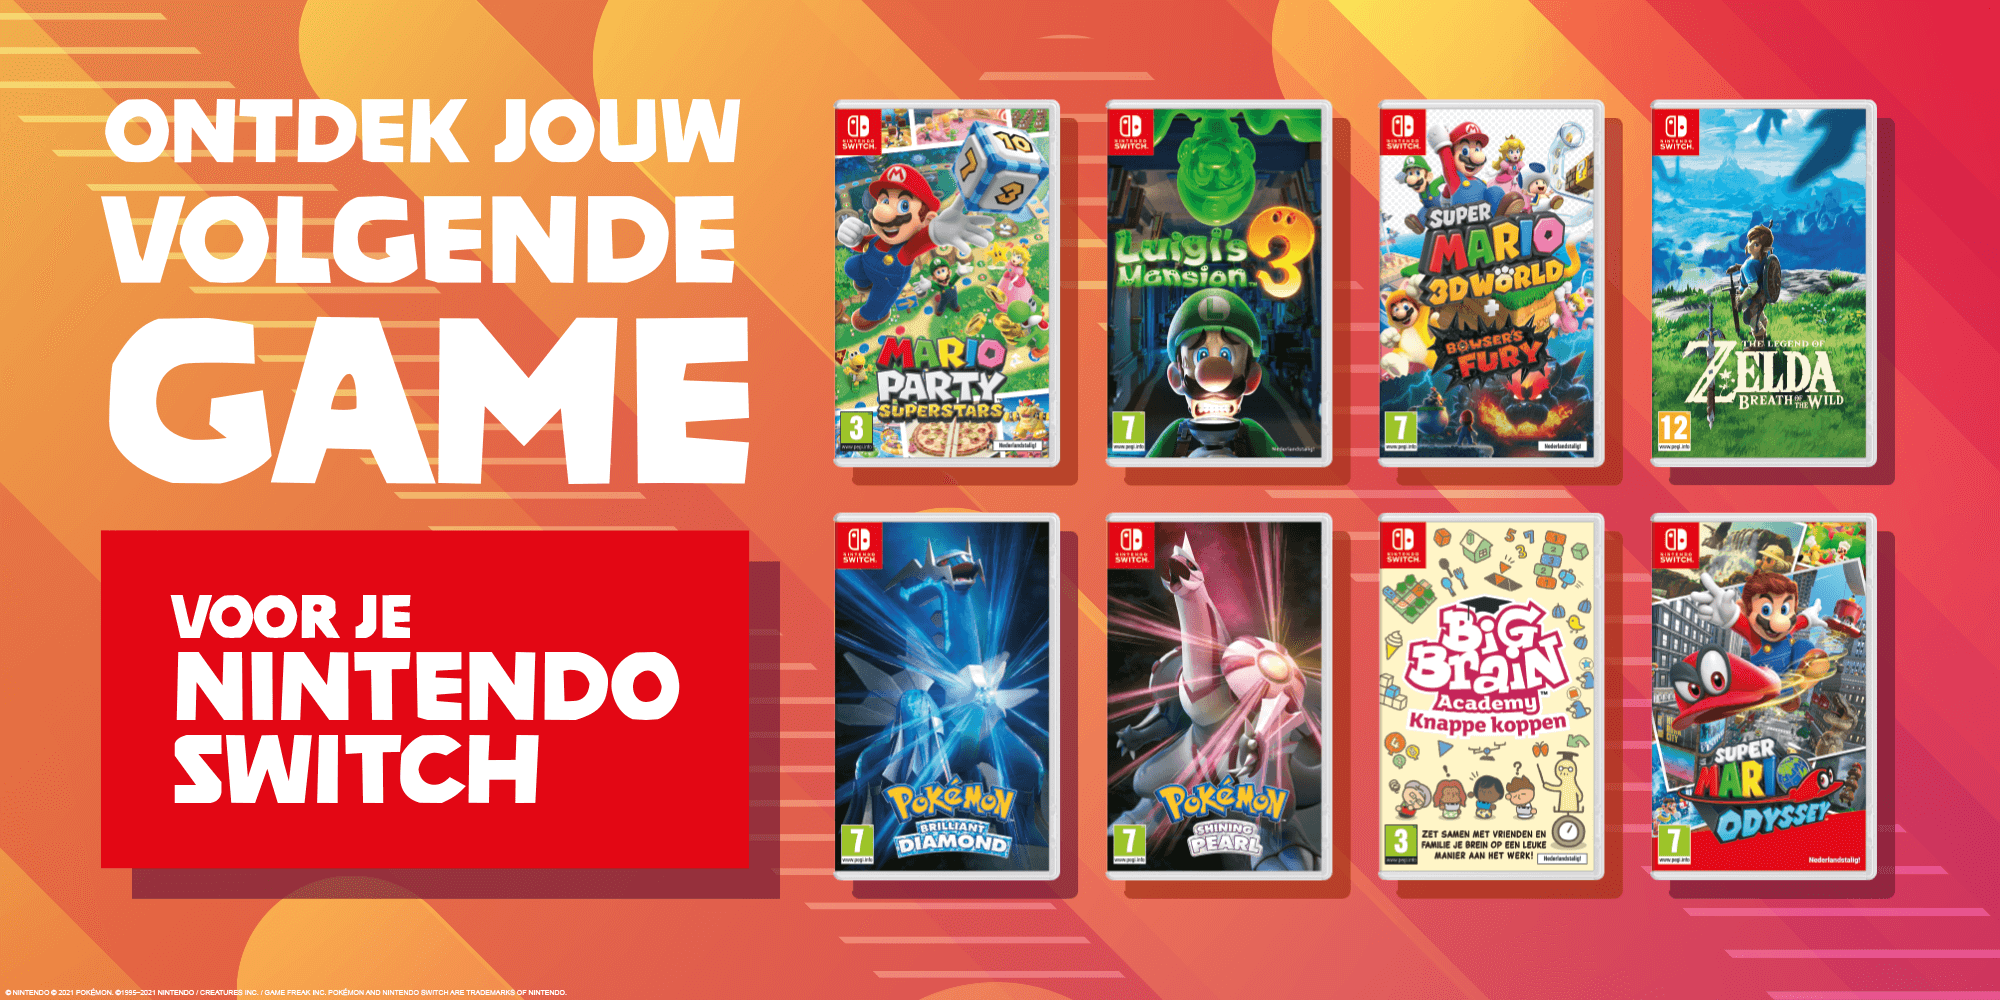 Ontdek jouw volgende game voor je Nintendo Switch!